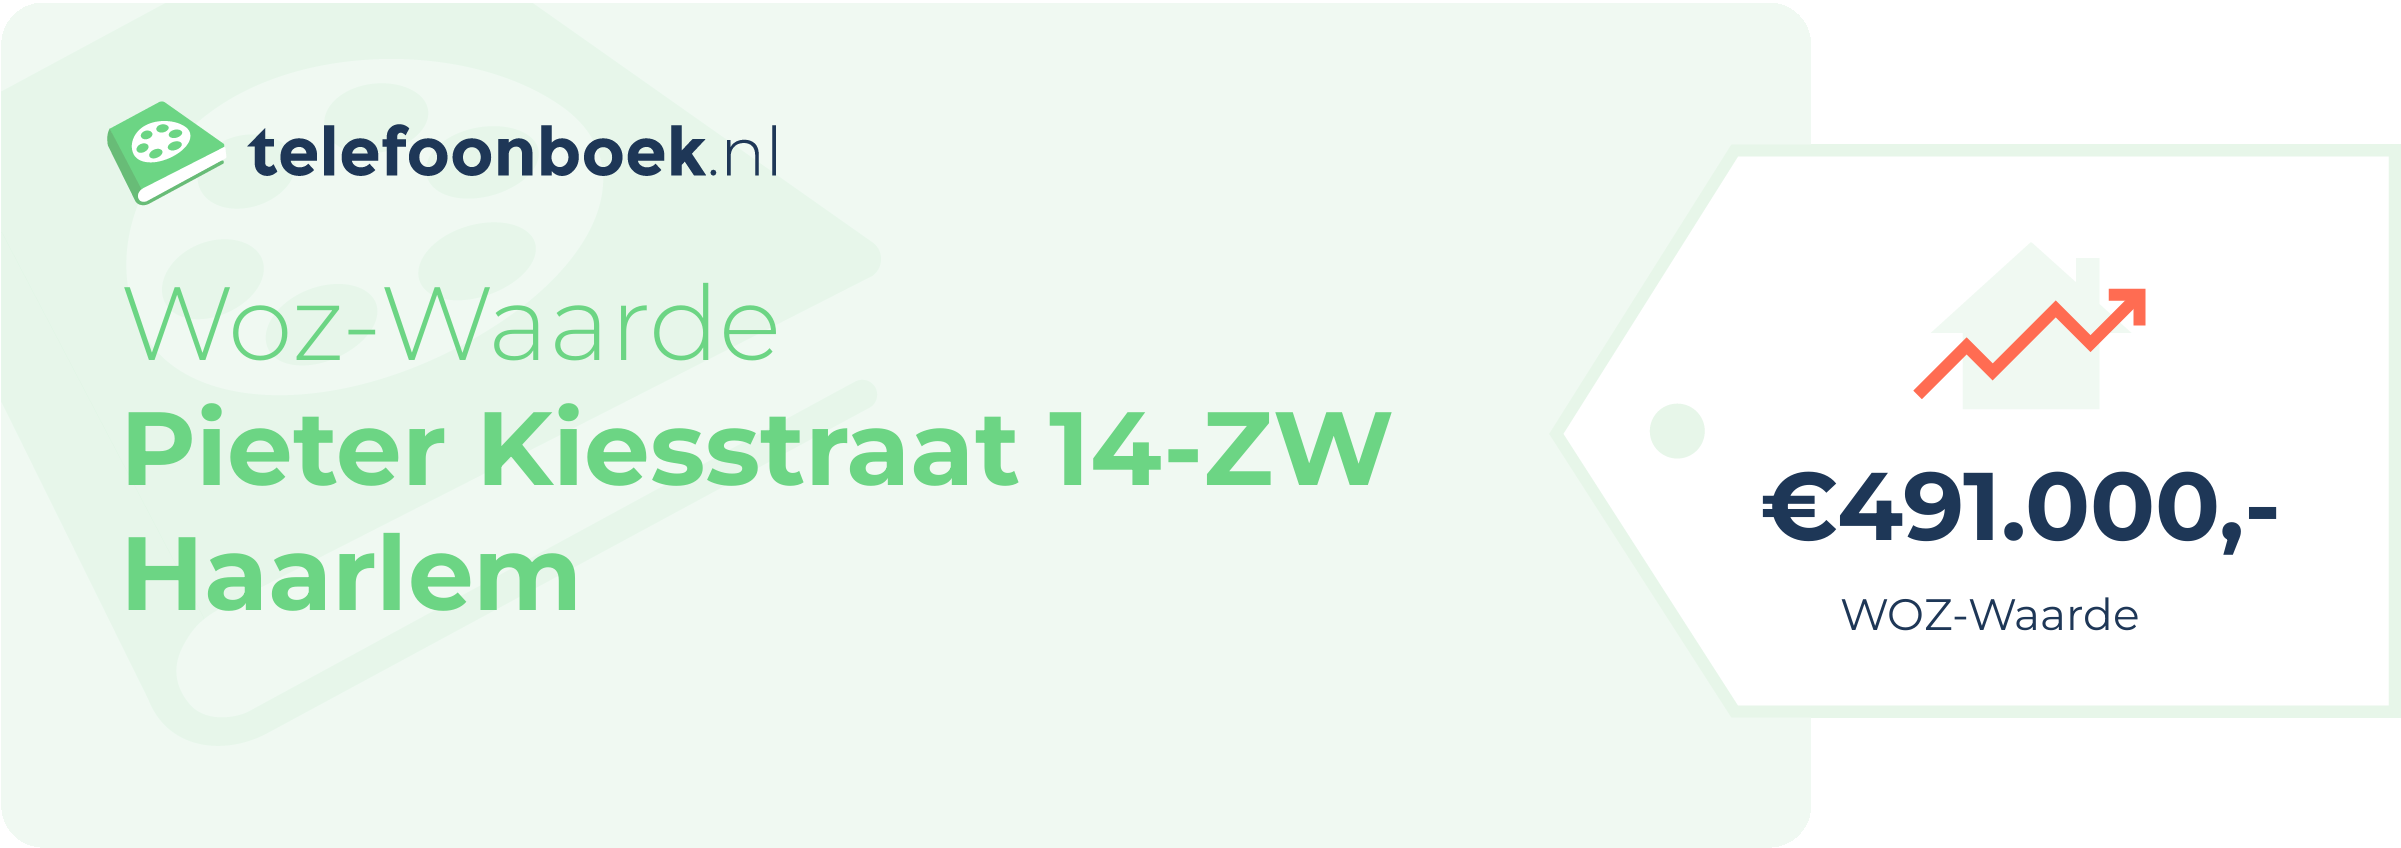 WOZ-waarde Pieter Kiesstraat 14-ZW Haarlem